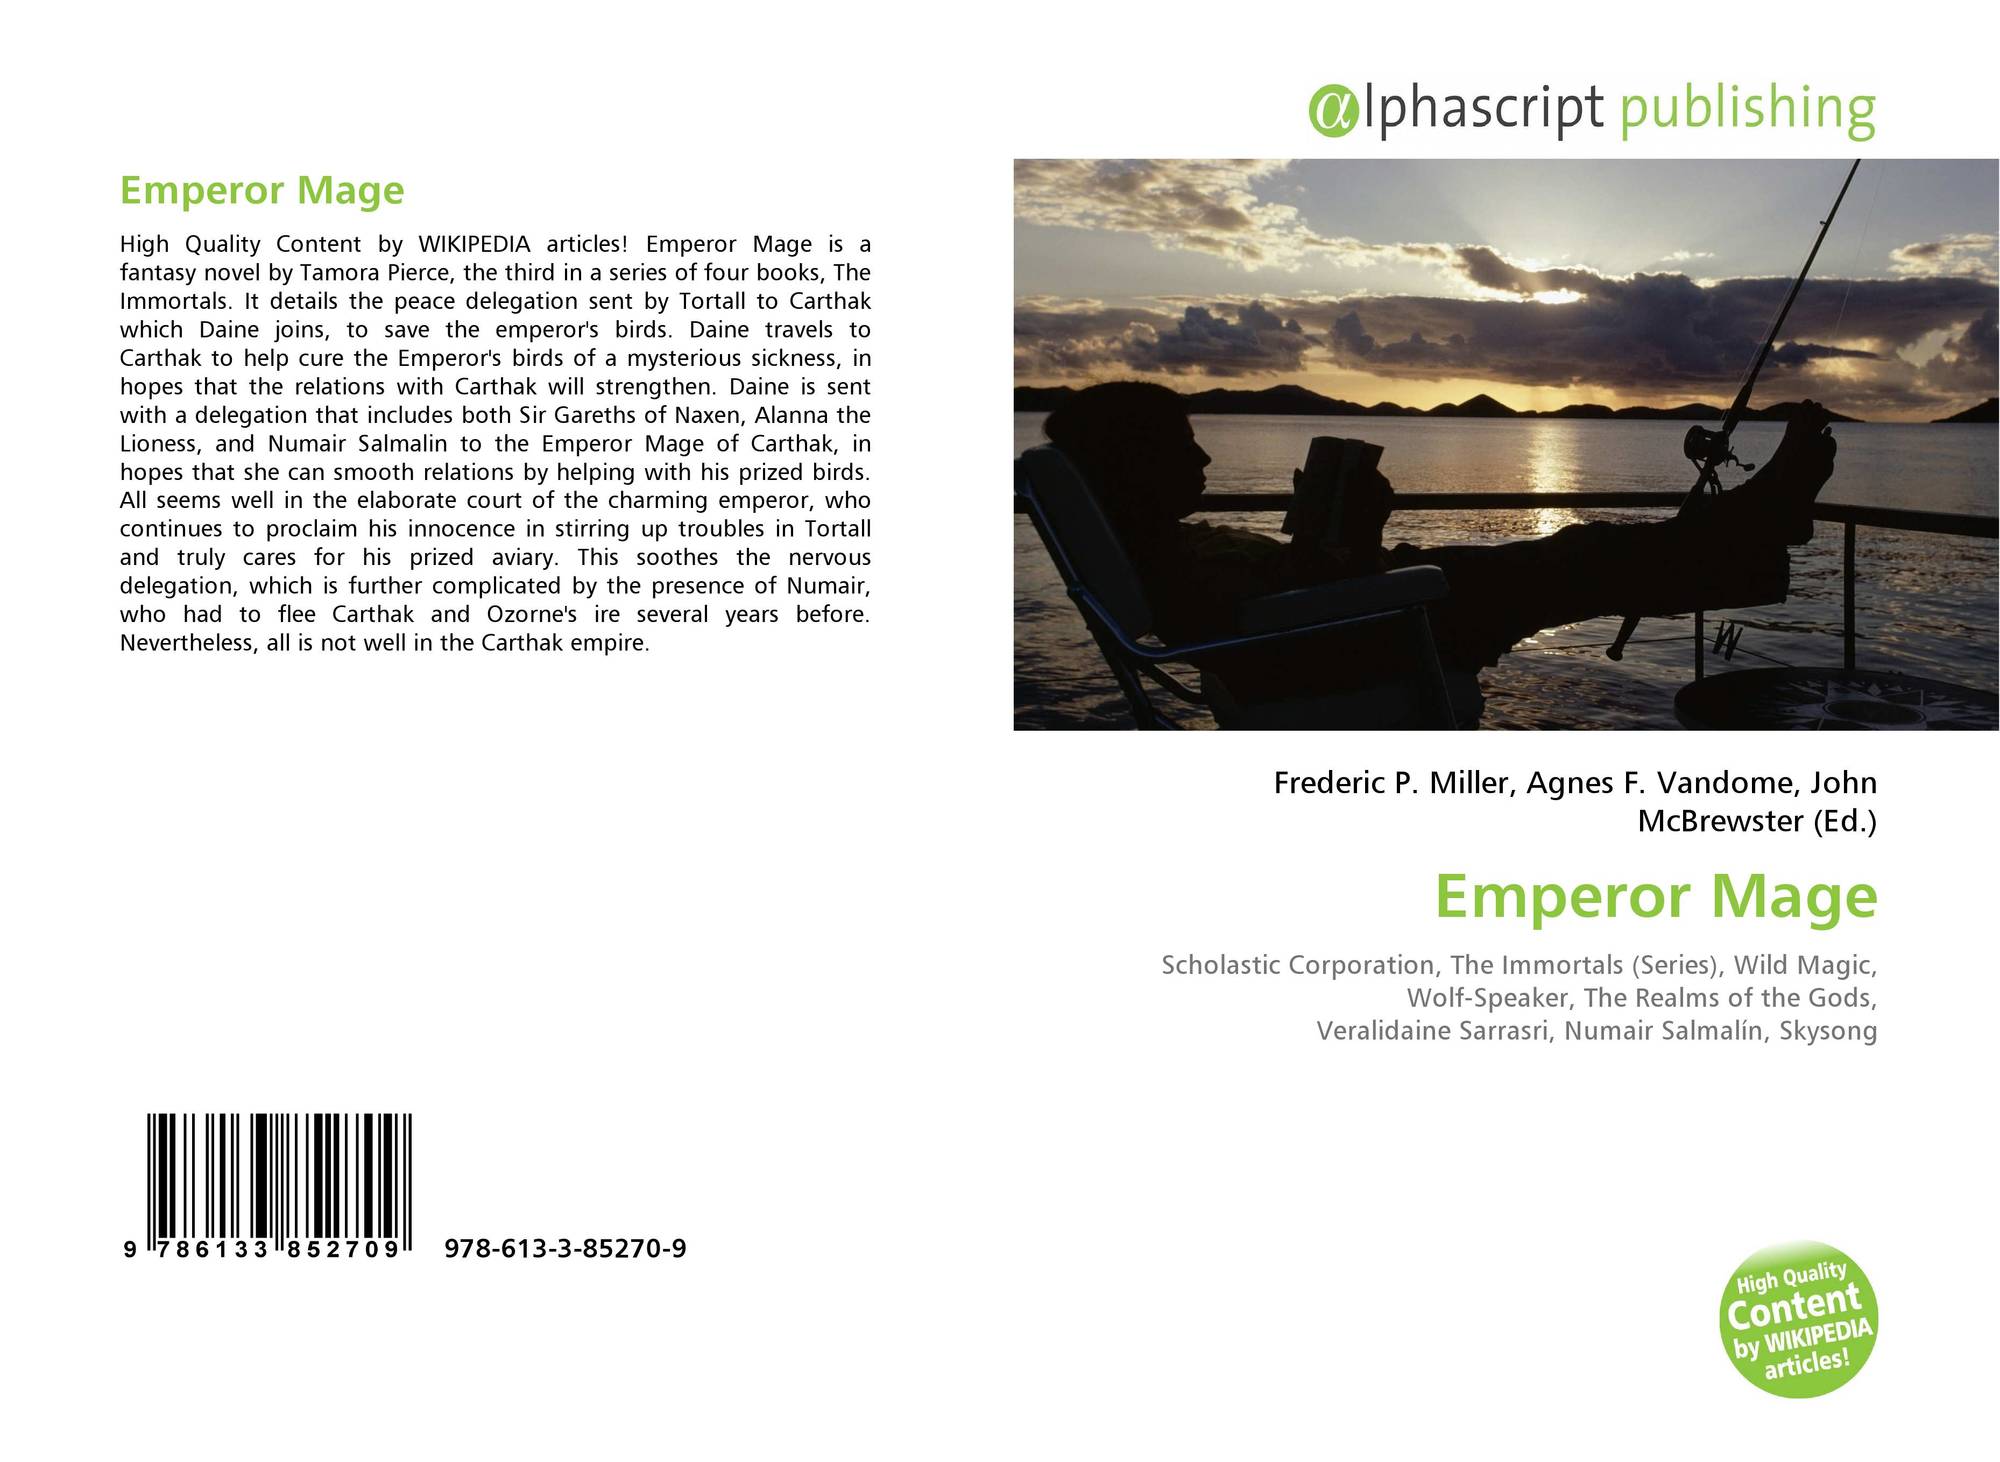 Emperor Mage by Tamora Pierce